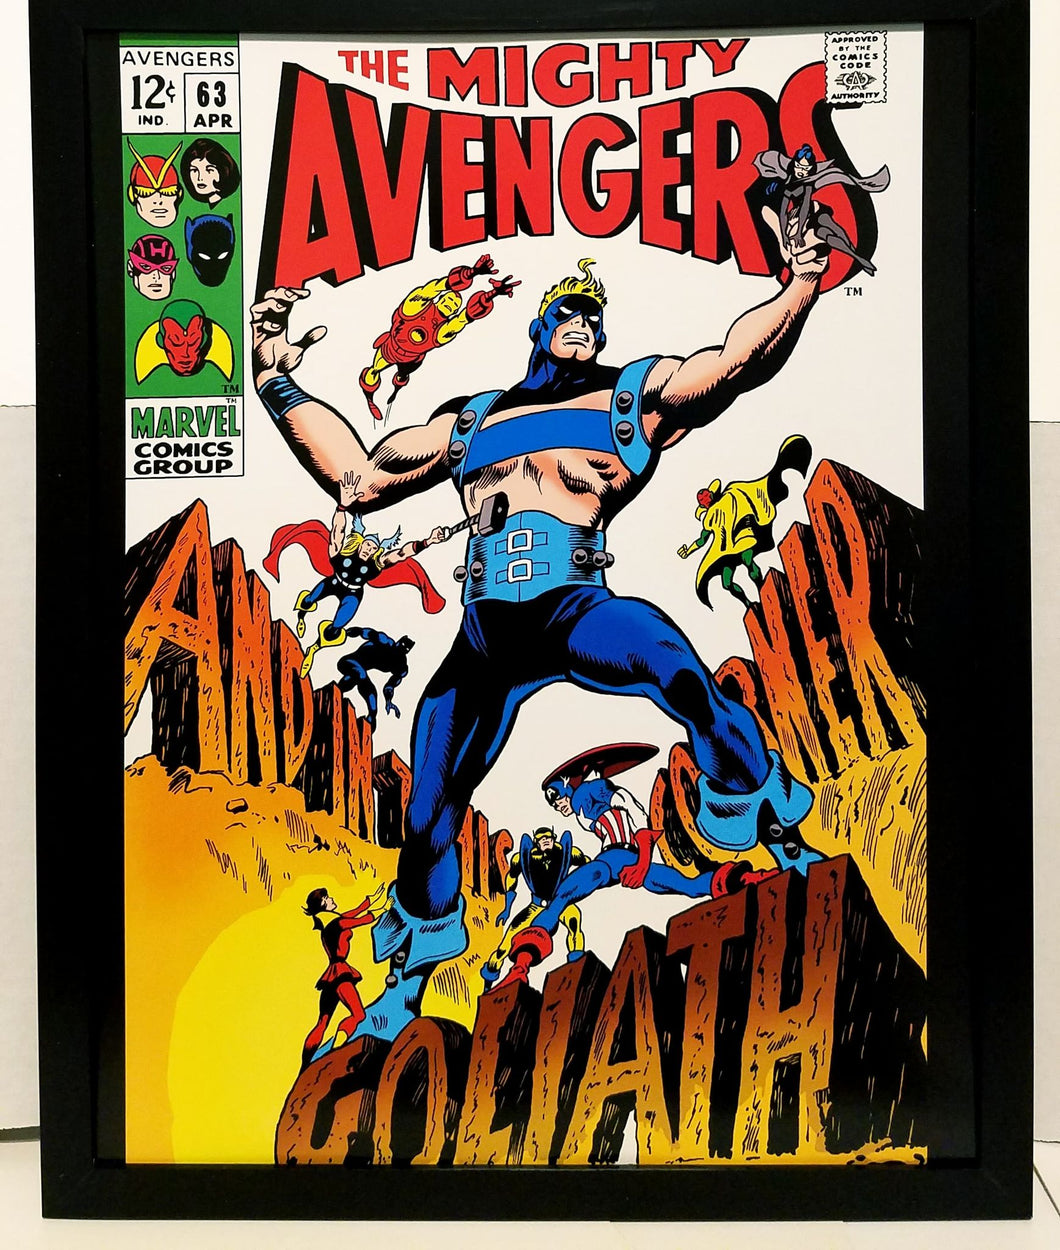 Avengers #63 Goliath by Gene Colan 11x14 FRAMED Marvel Comics Art Print Poster